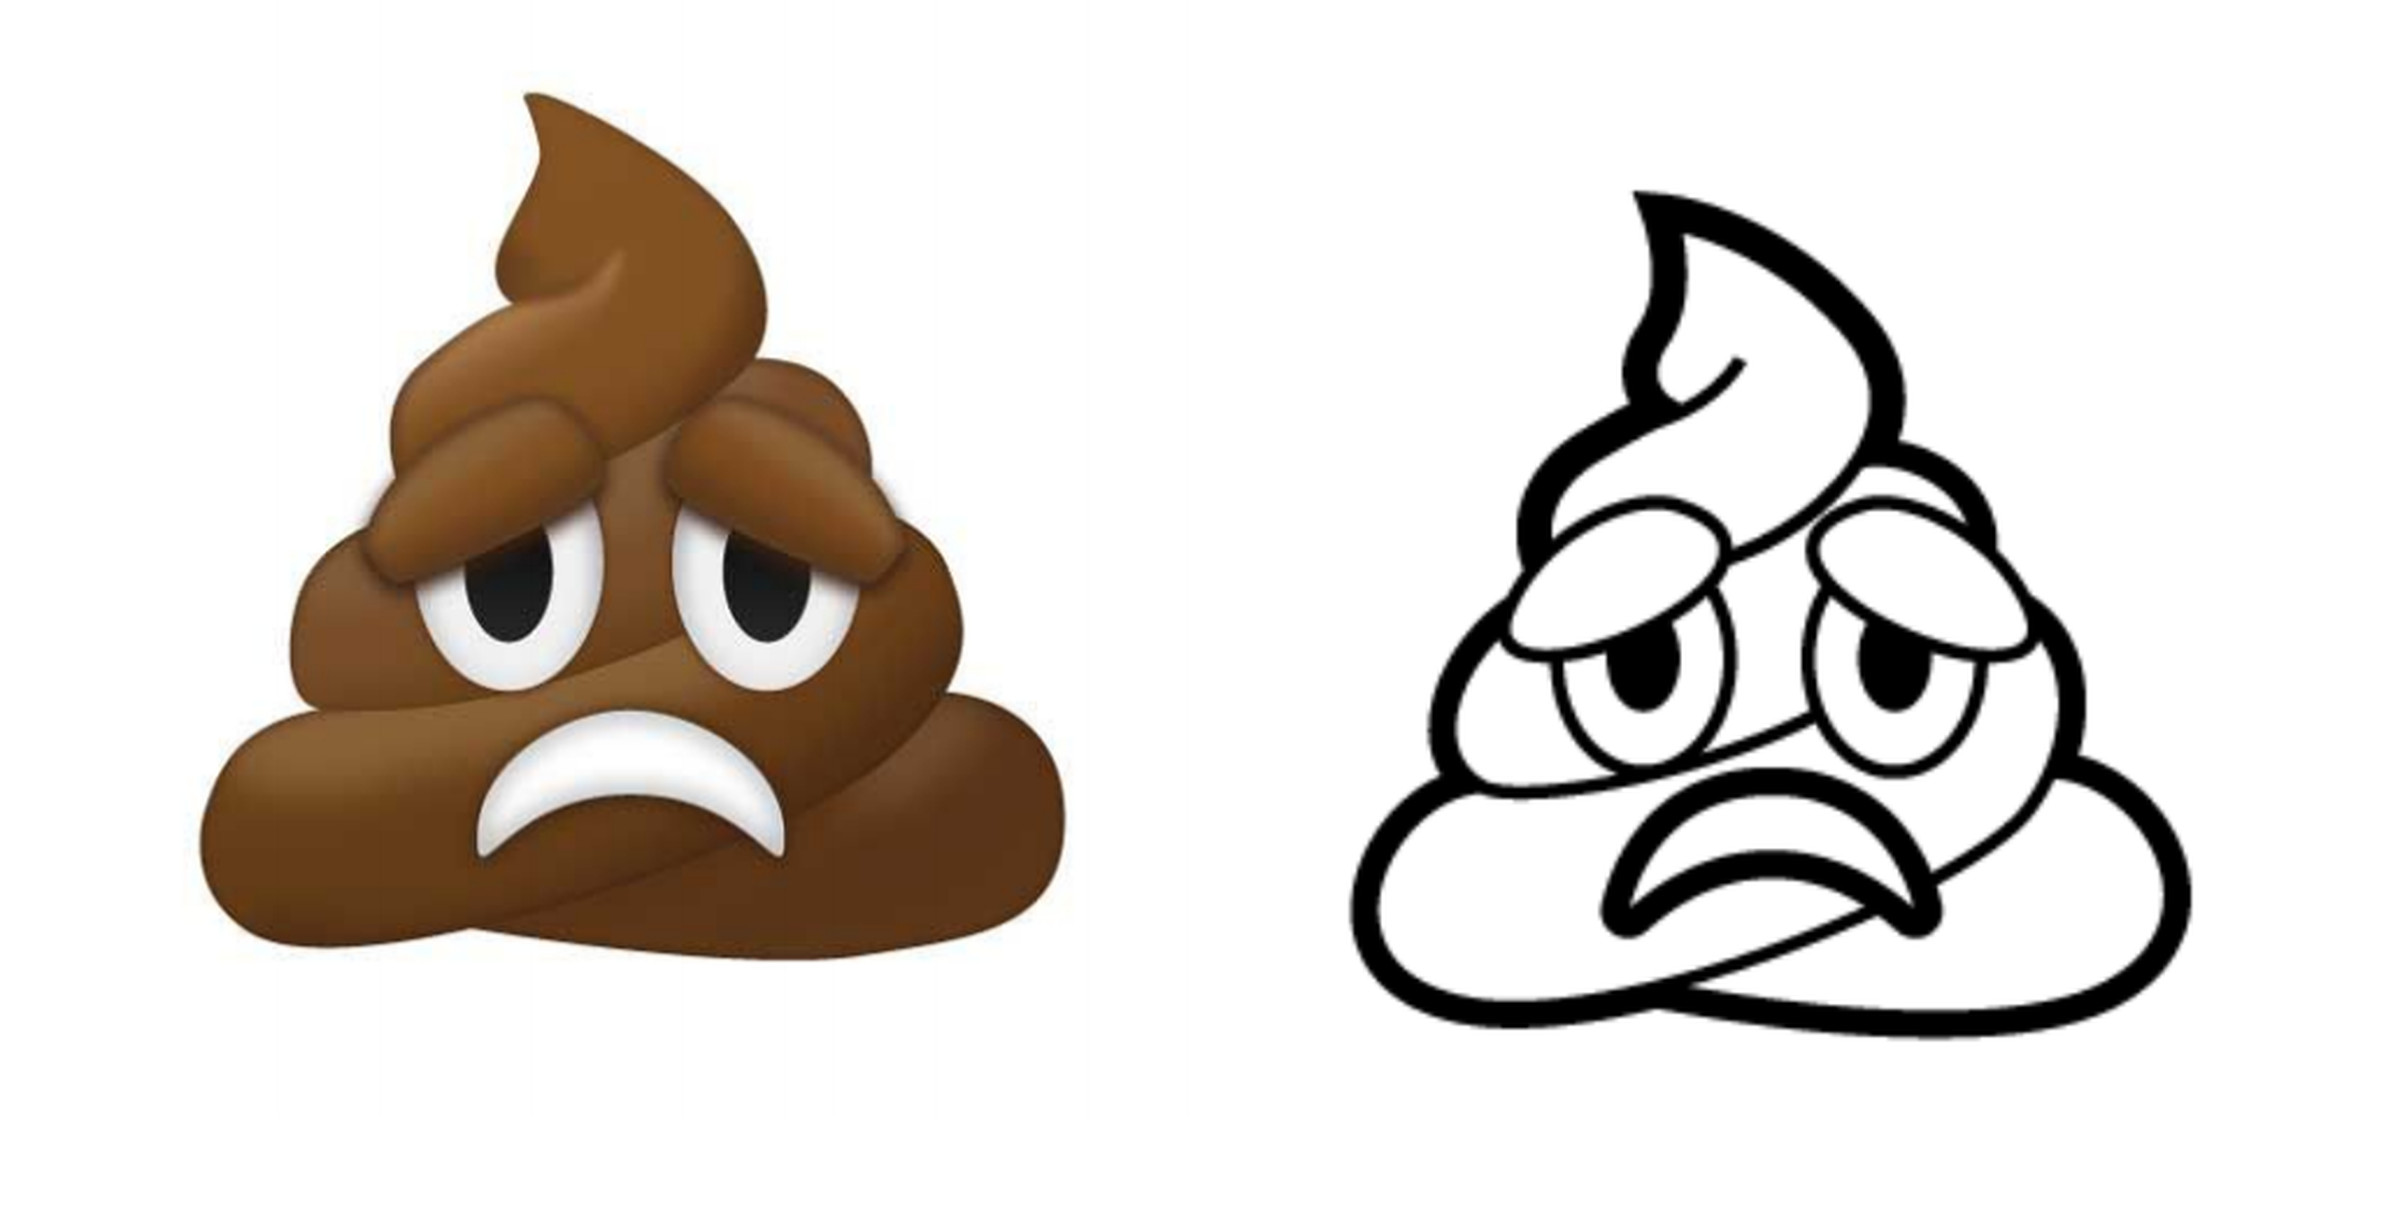 Frowning pile of poo emoji proposal